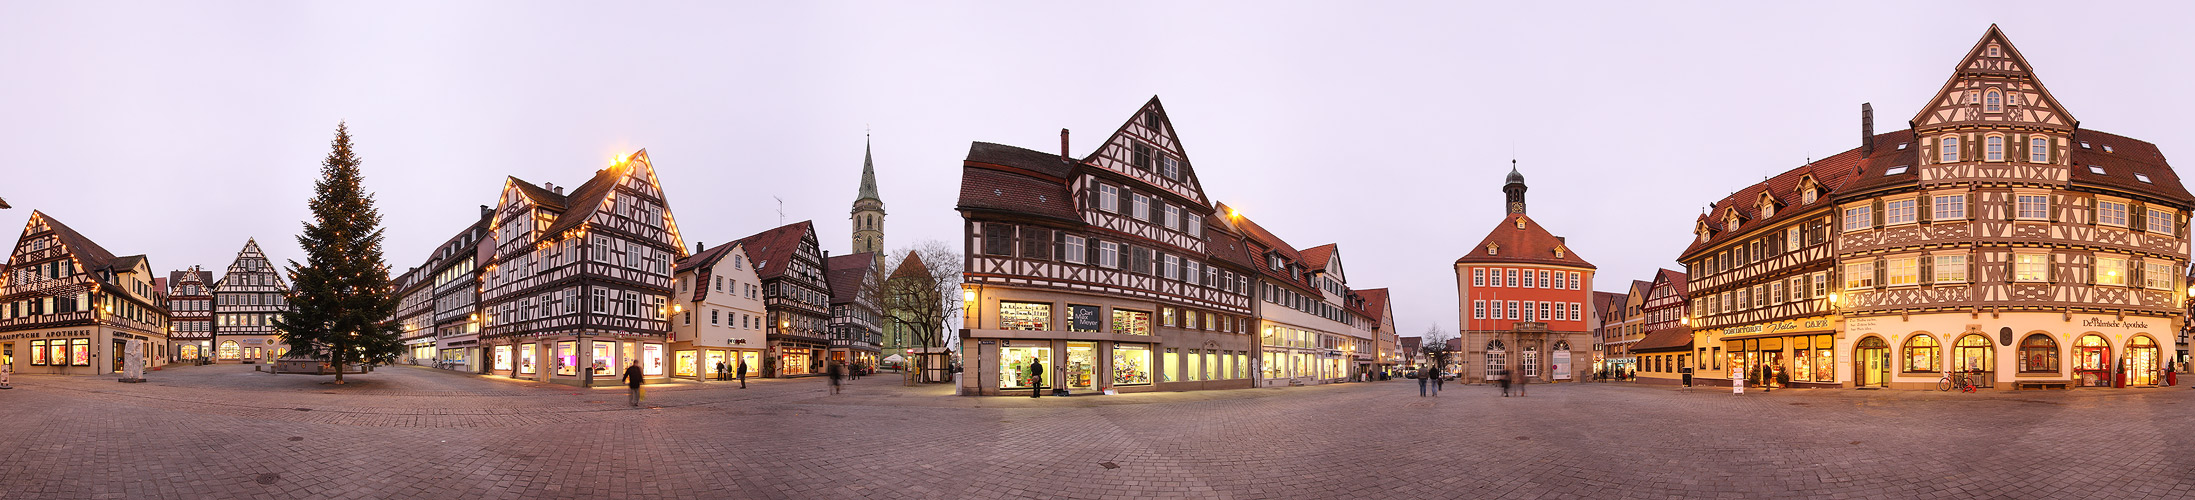 Marktplatz in Schorndorf 360°